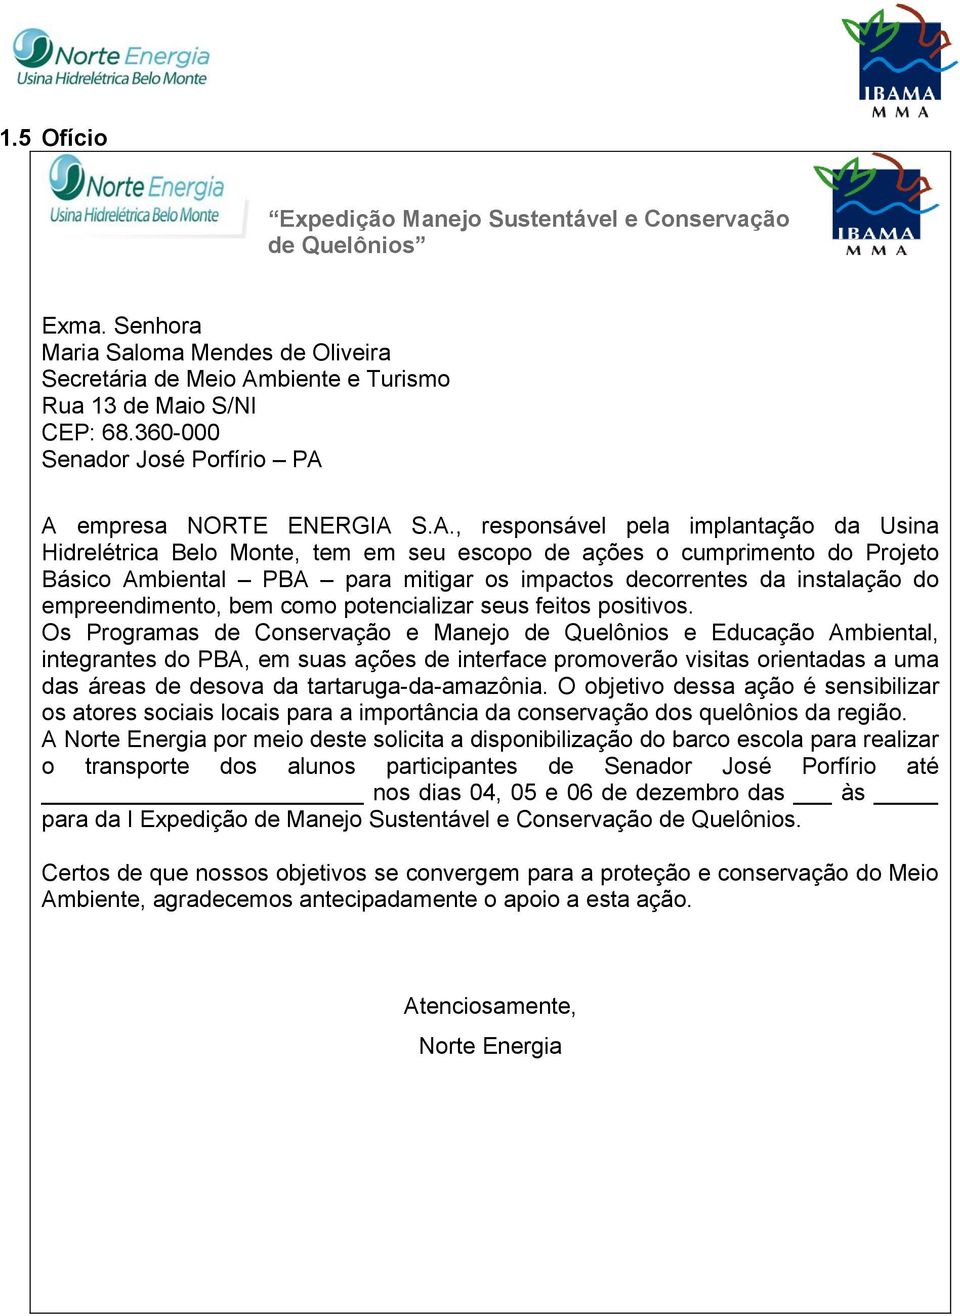 A empresa NORTE ENERGIA S.A., responsável pela implantação da Usina Hidrelétrica Belo Monte, tem em seu escopo de ações o cumprimento do Projeto Básico Ambiental PBA para mitigar os impactos